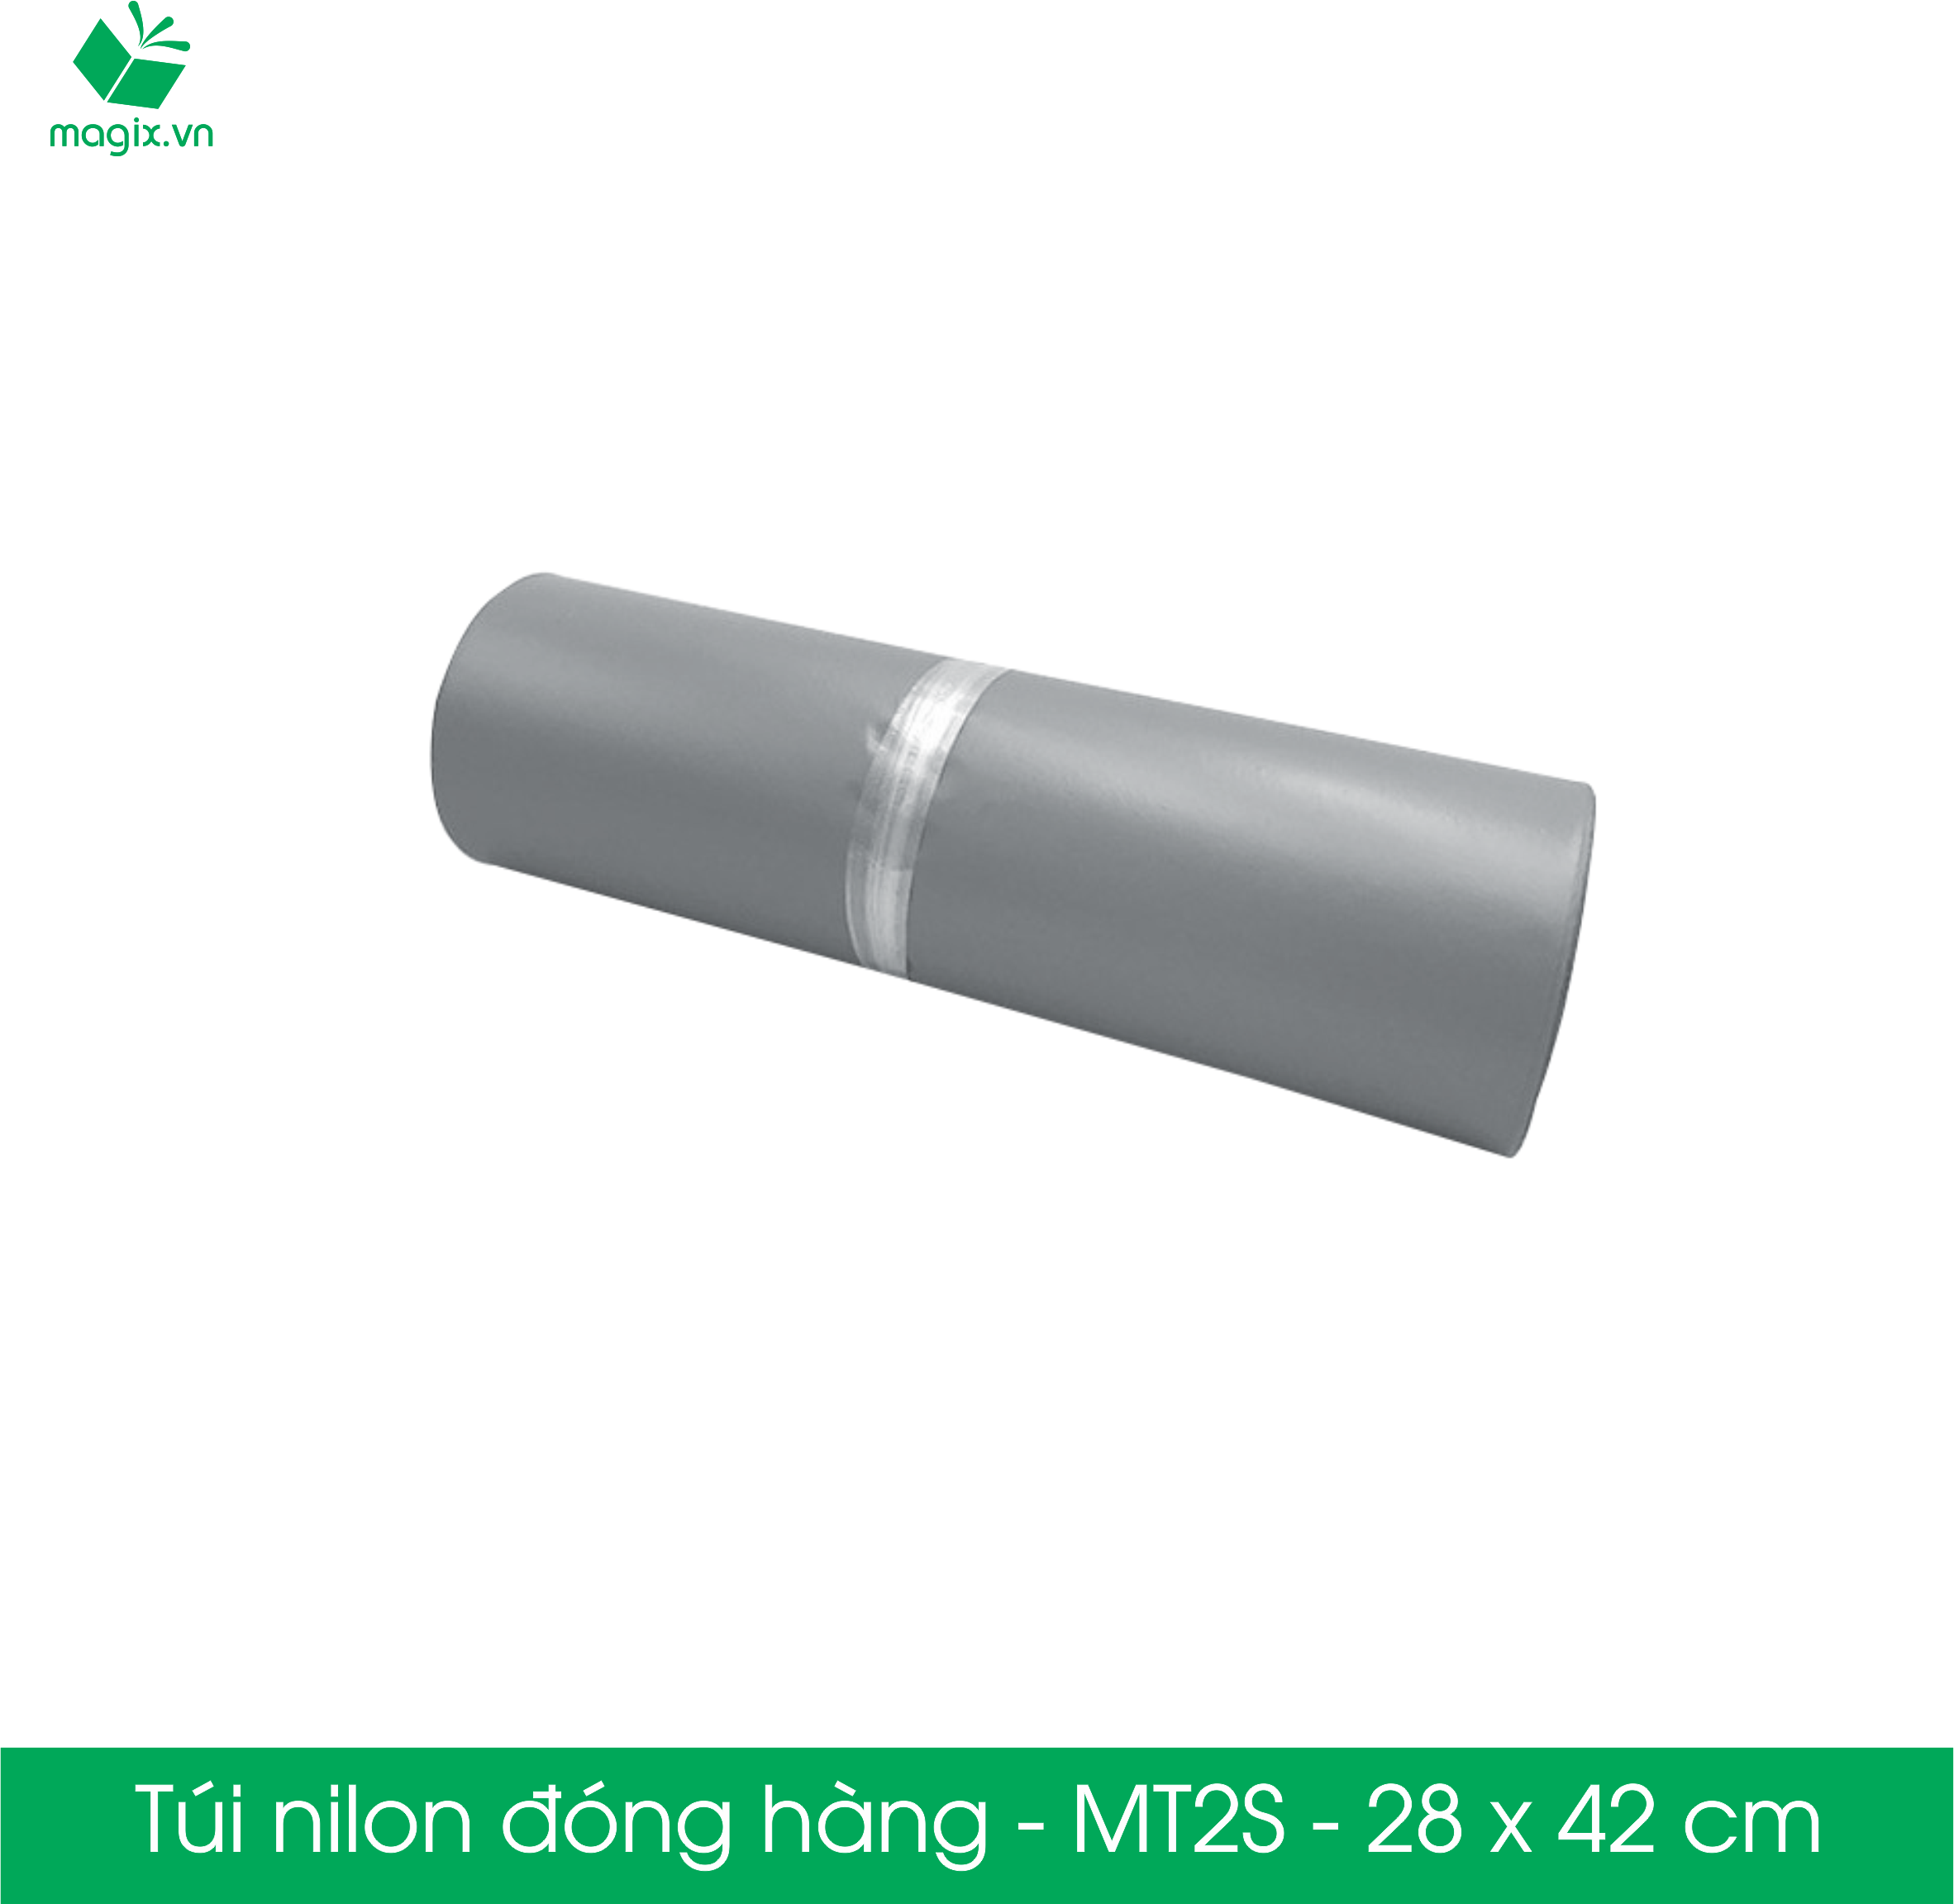 MT2S - 28x42 cm - Túi nilon gói hàng - 100 túi niêm phong đóng hàng màu xám